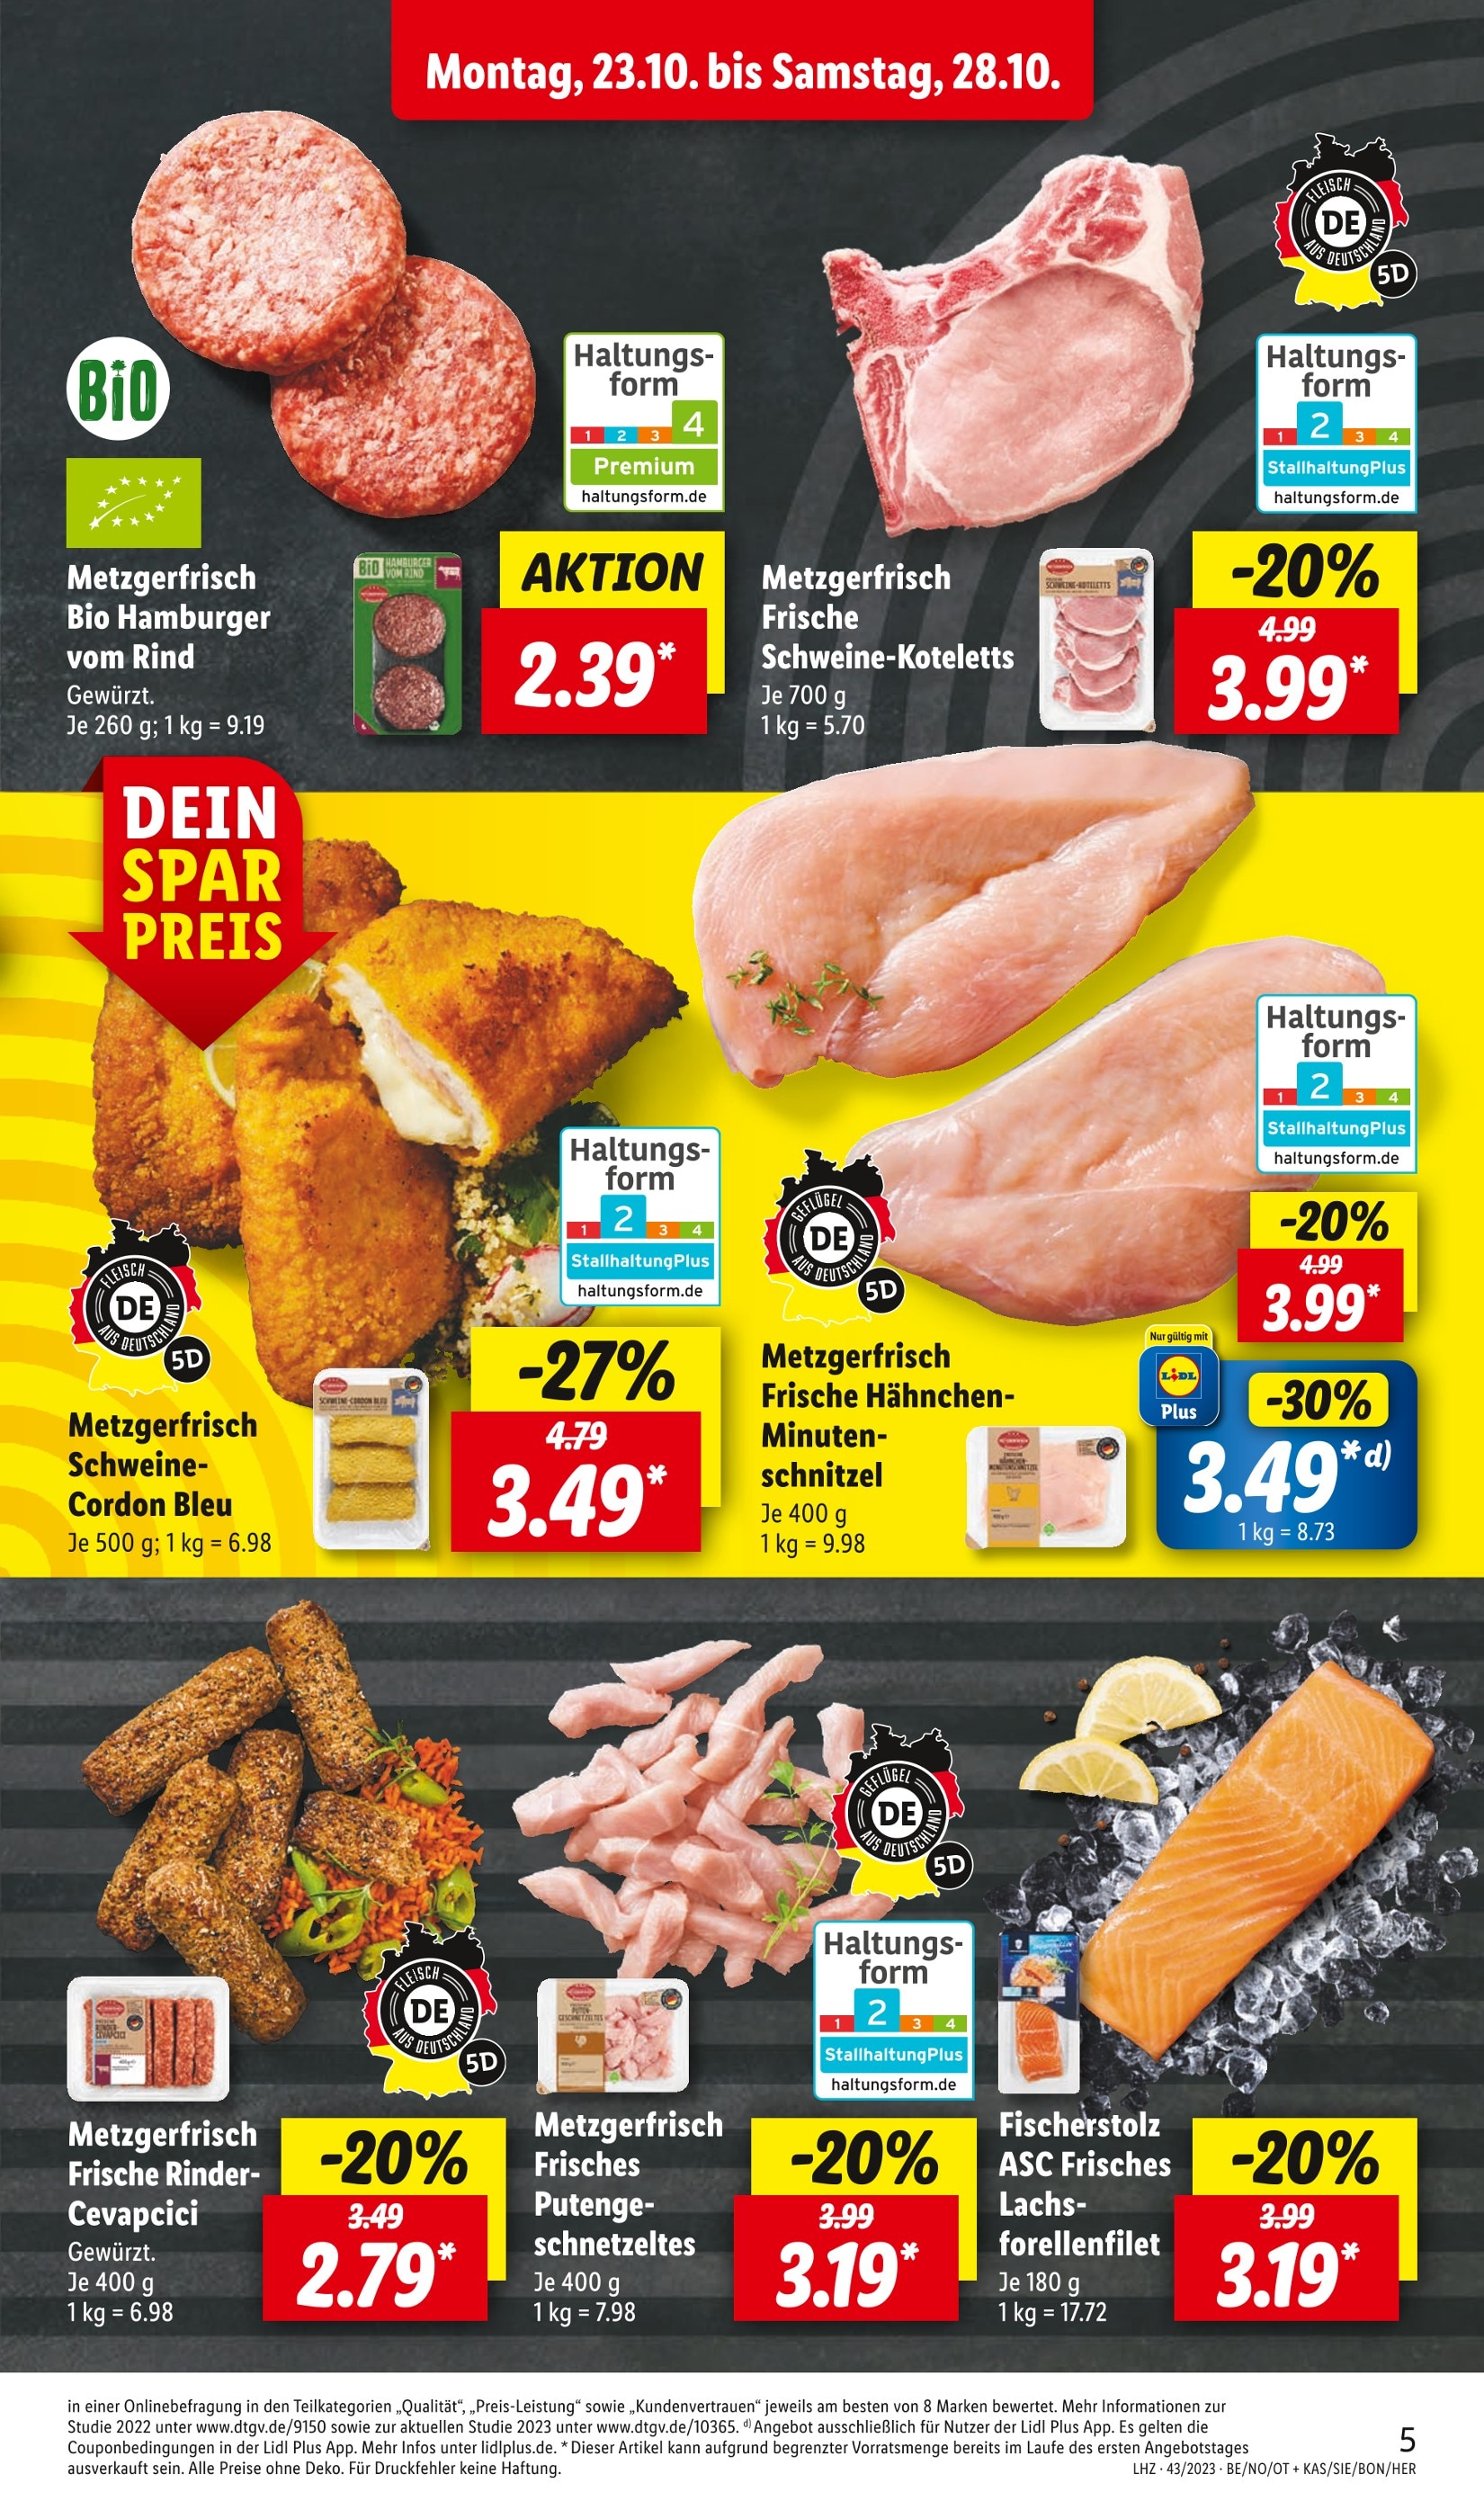 Hackfleisch kaufen in Zwickau - günstige Angebote in Zwickau